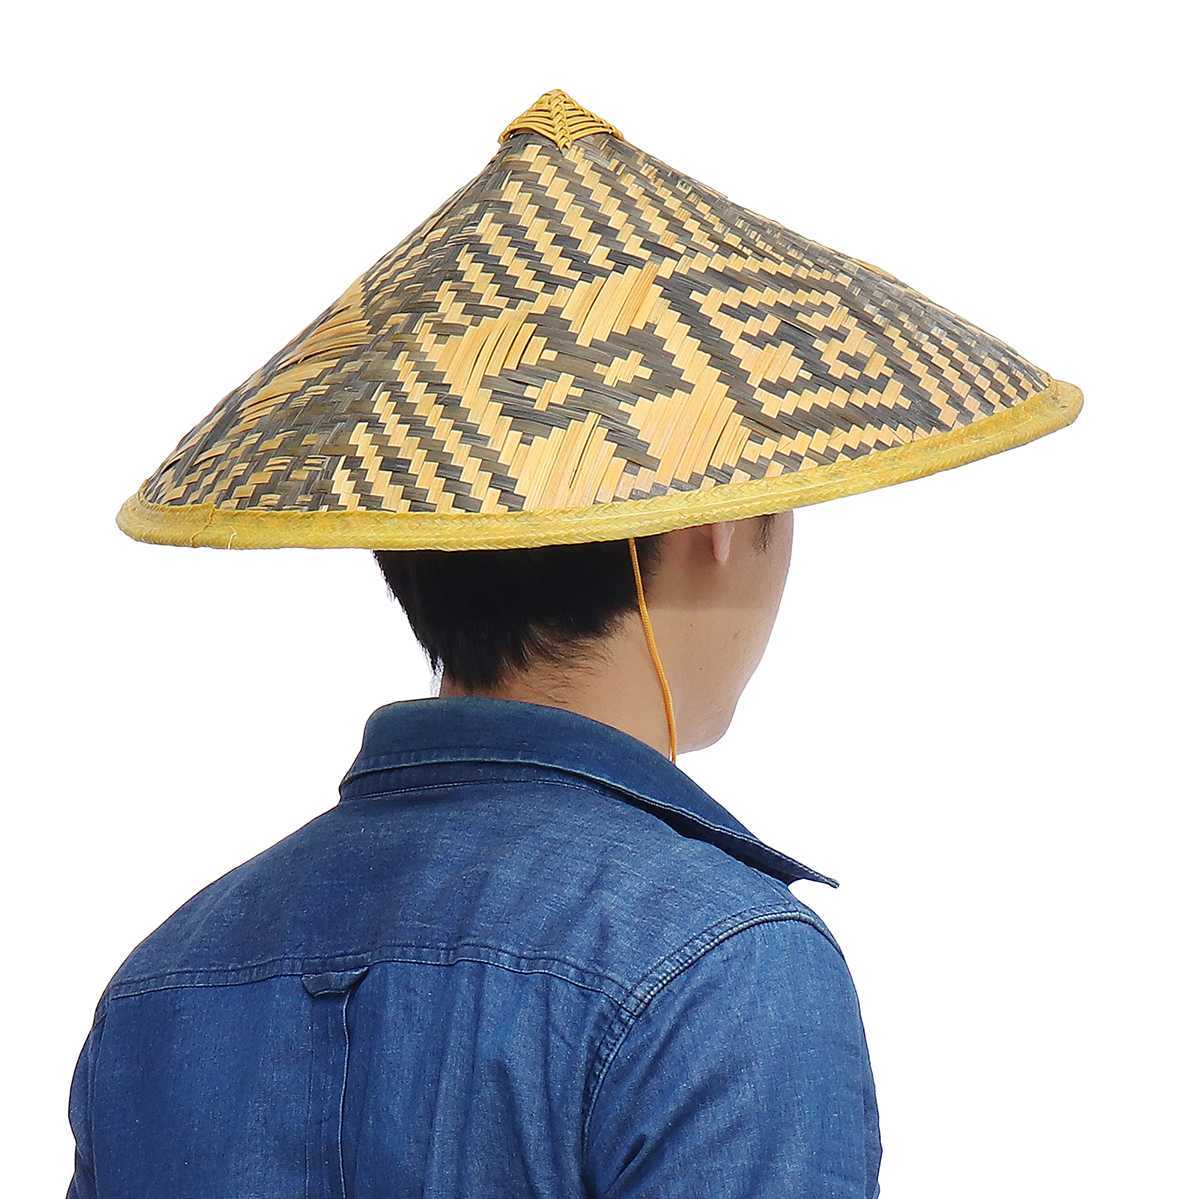 Bamboo hat. Японская соломенная шляпа амигаса. Шляпа амигаса Вьетнам. Амигаса головной убор самурая. Китайская соломенная шляпа.